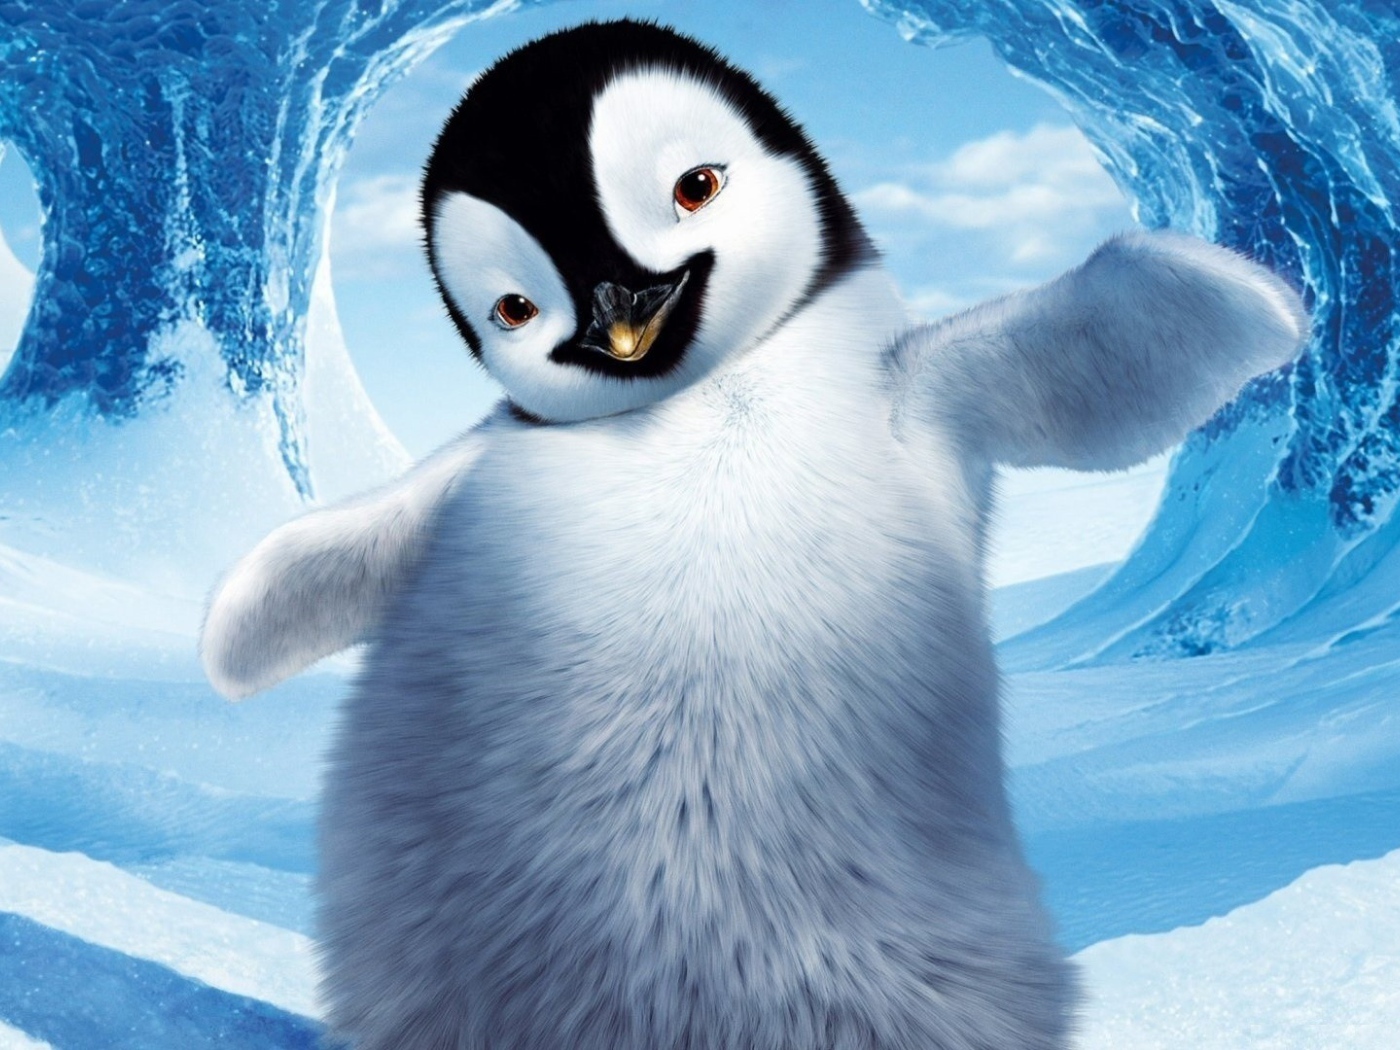 Пингвин в снегу